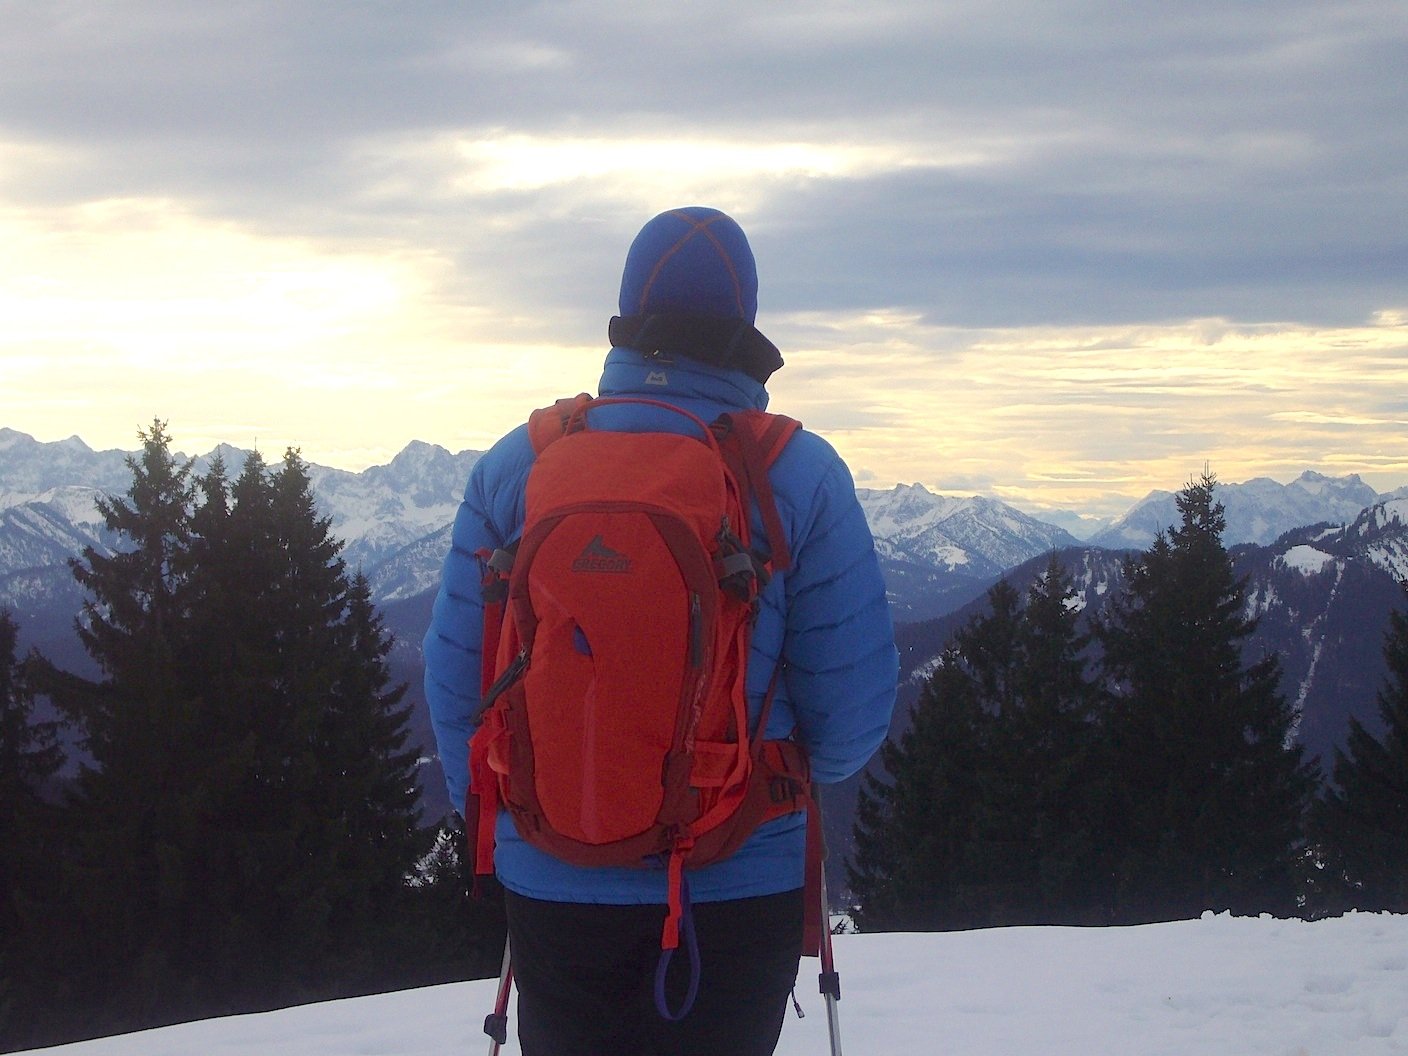 Testbericht – Gregory Mountain Products / Targhee 32: Technisch ausgereifter und komfortabler Skitourenrucksack